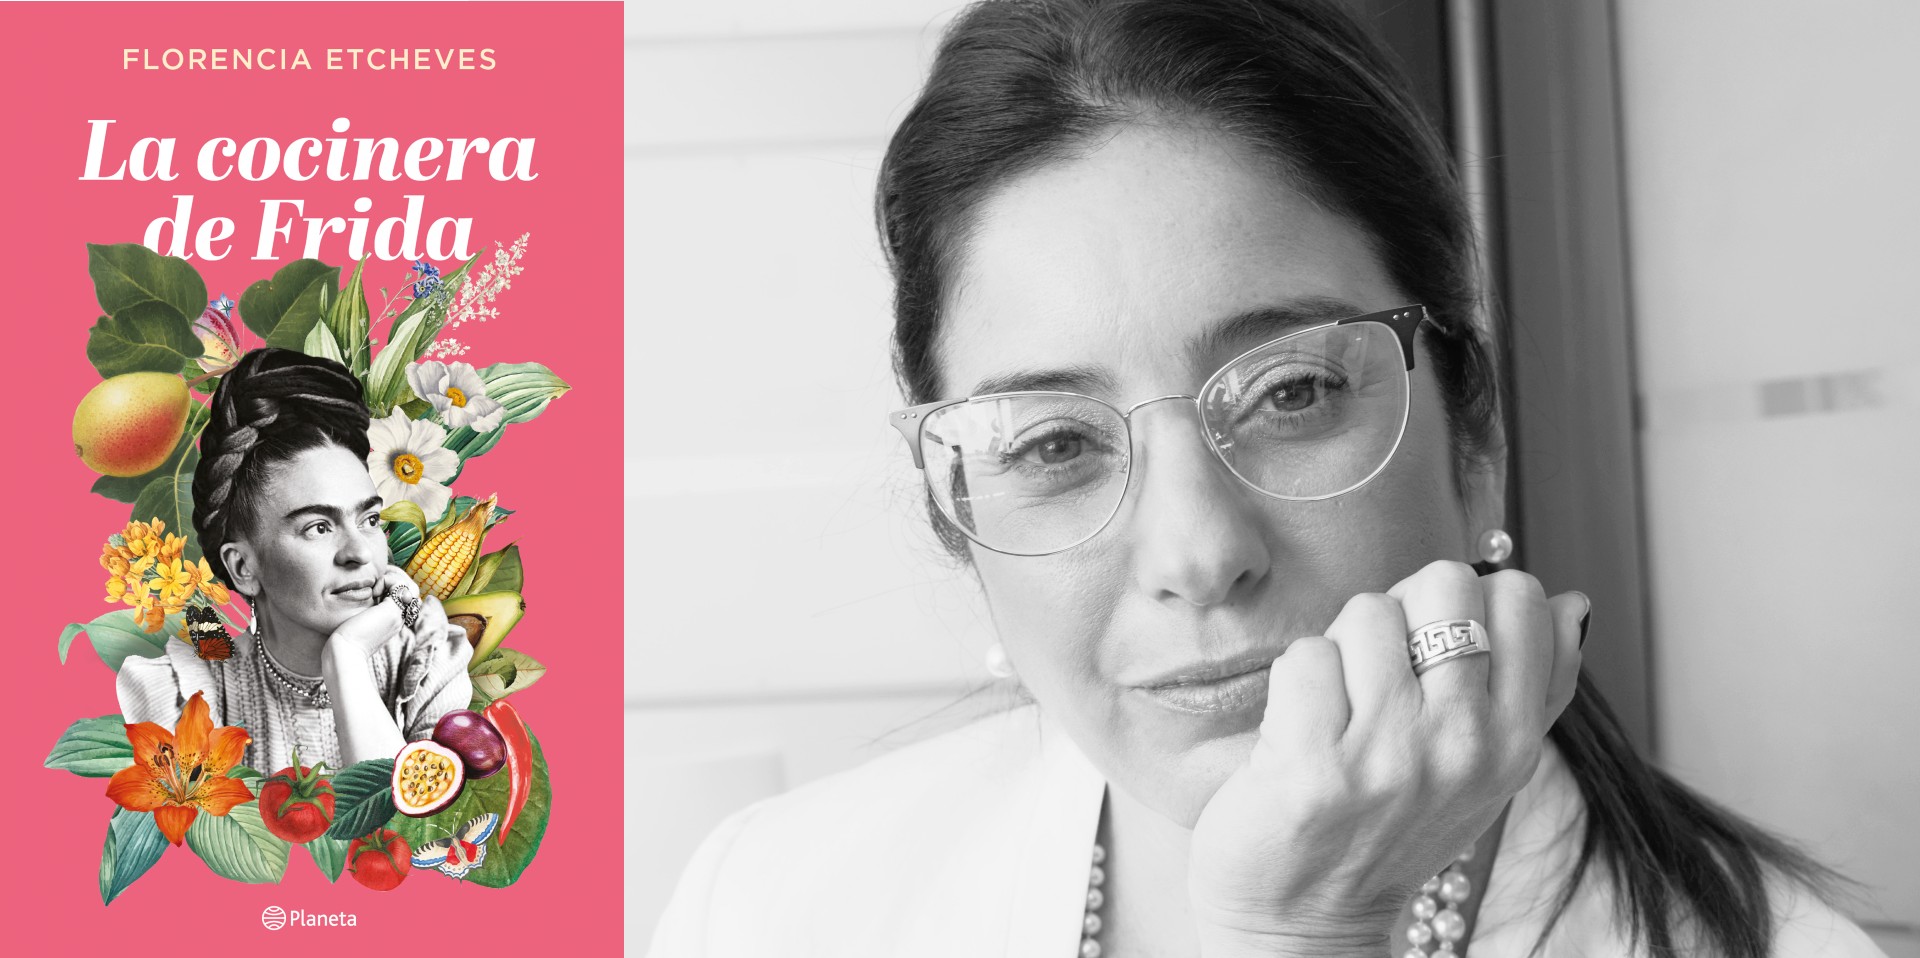 “La cocinera de Frida”, el nuevo libro de la argentina Florencia Etcheves: “Los periodistas no terminamos de resignarnos a no trabajar con la verdad”